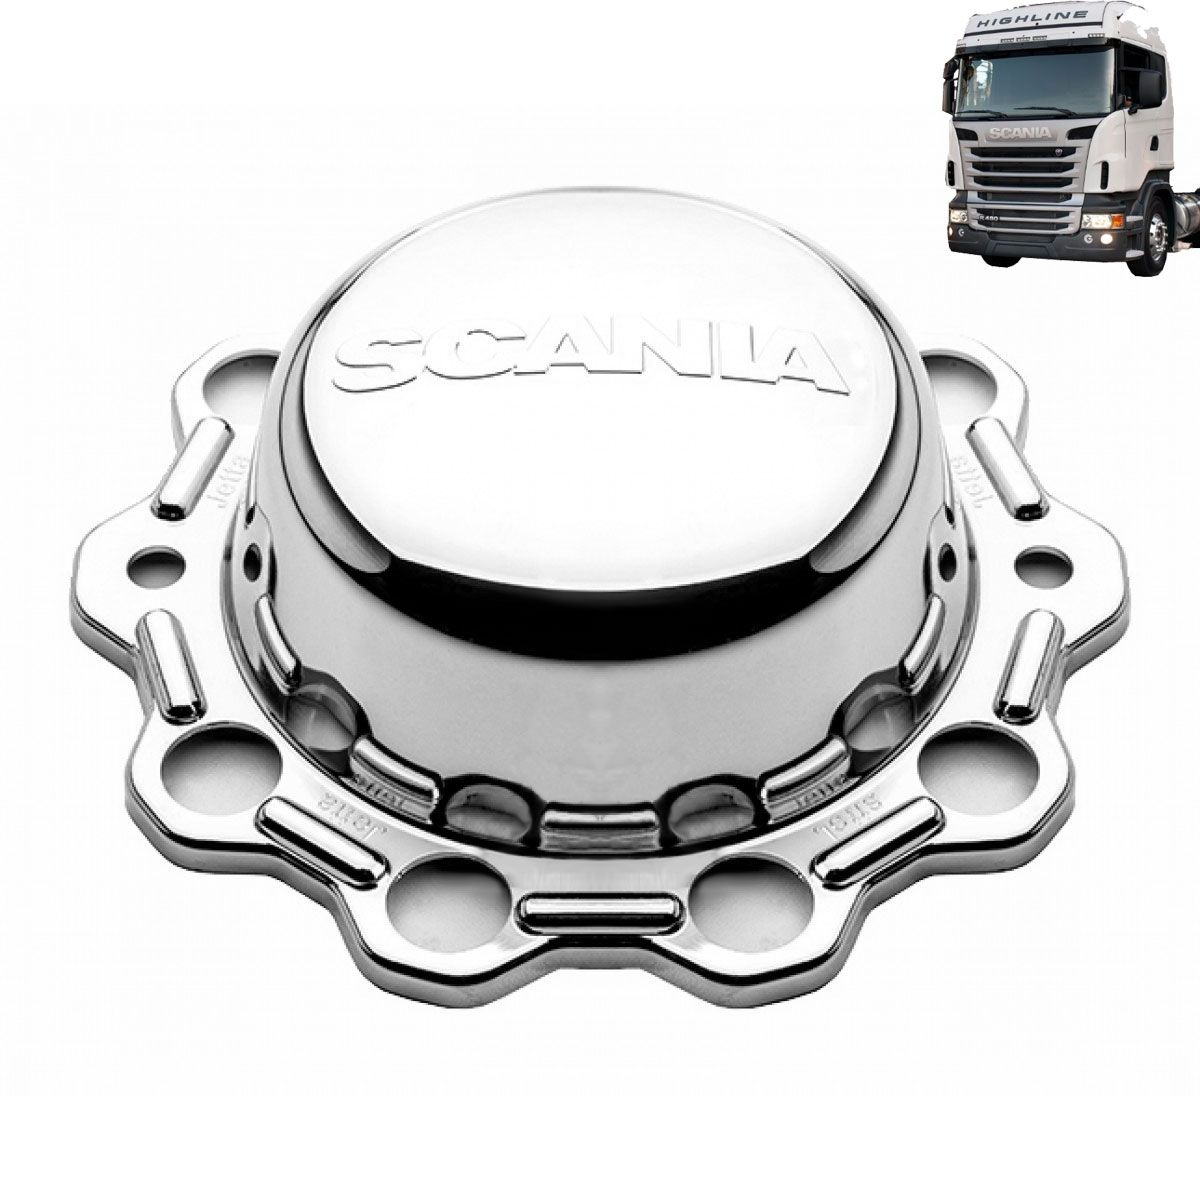 Kit sobre tampa dianteira tração e truck + 60 capas de porca compatível com o caminhão Scania S5 após 2011